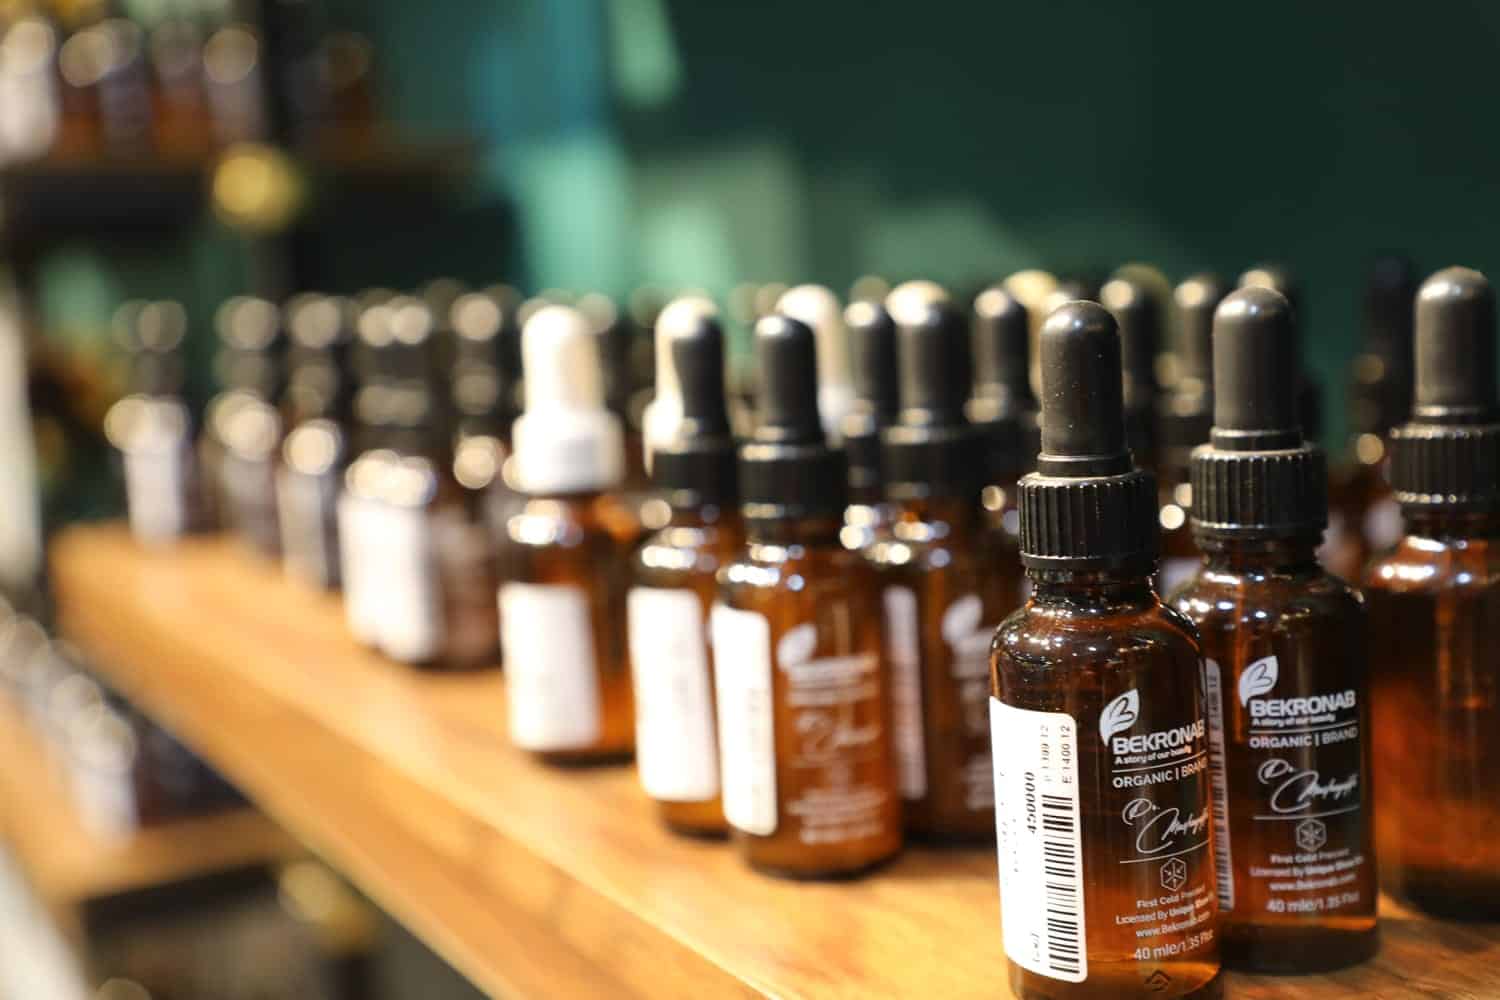 several bottles of beard oil on a shelf